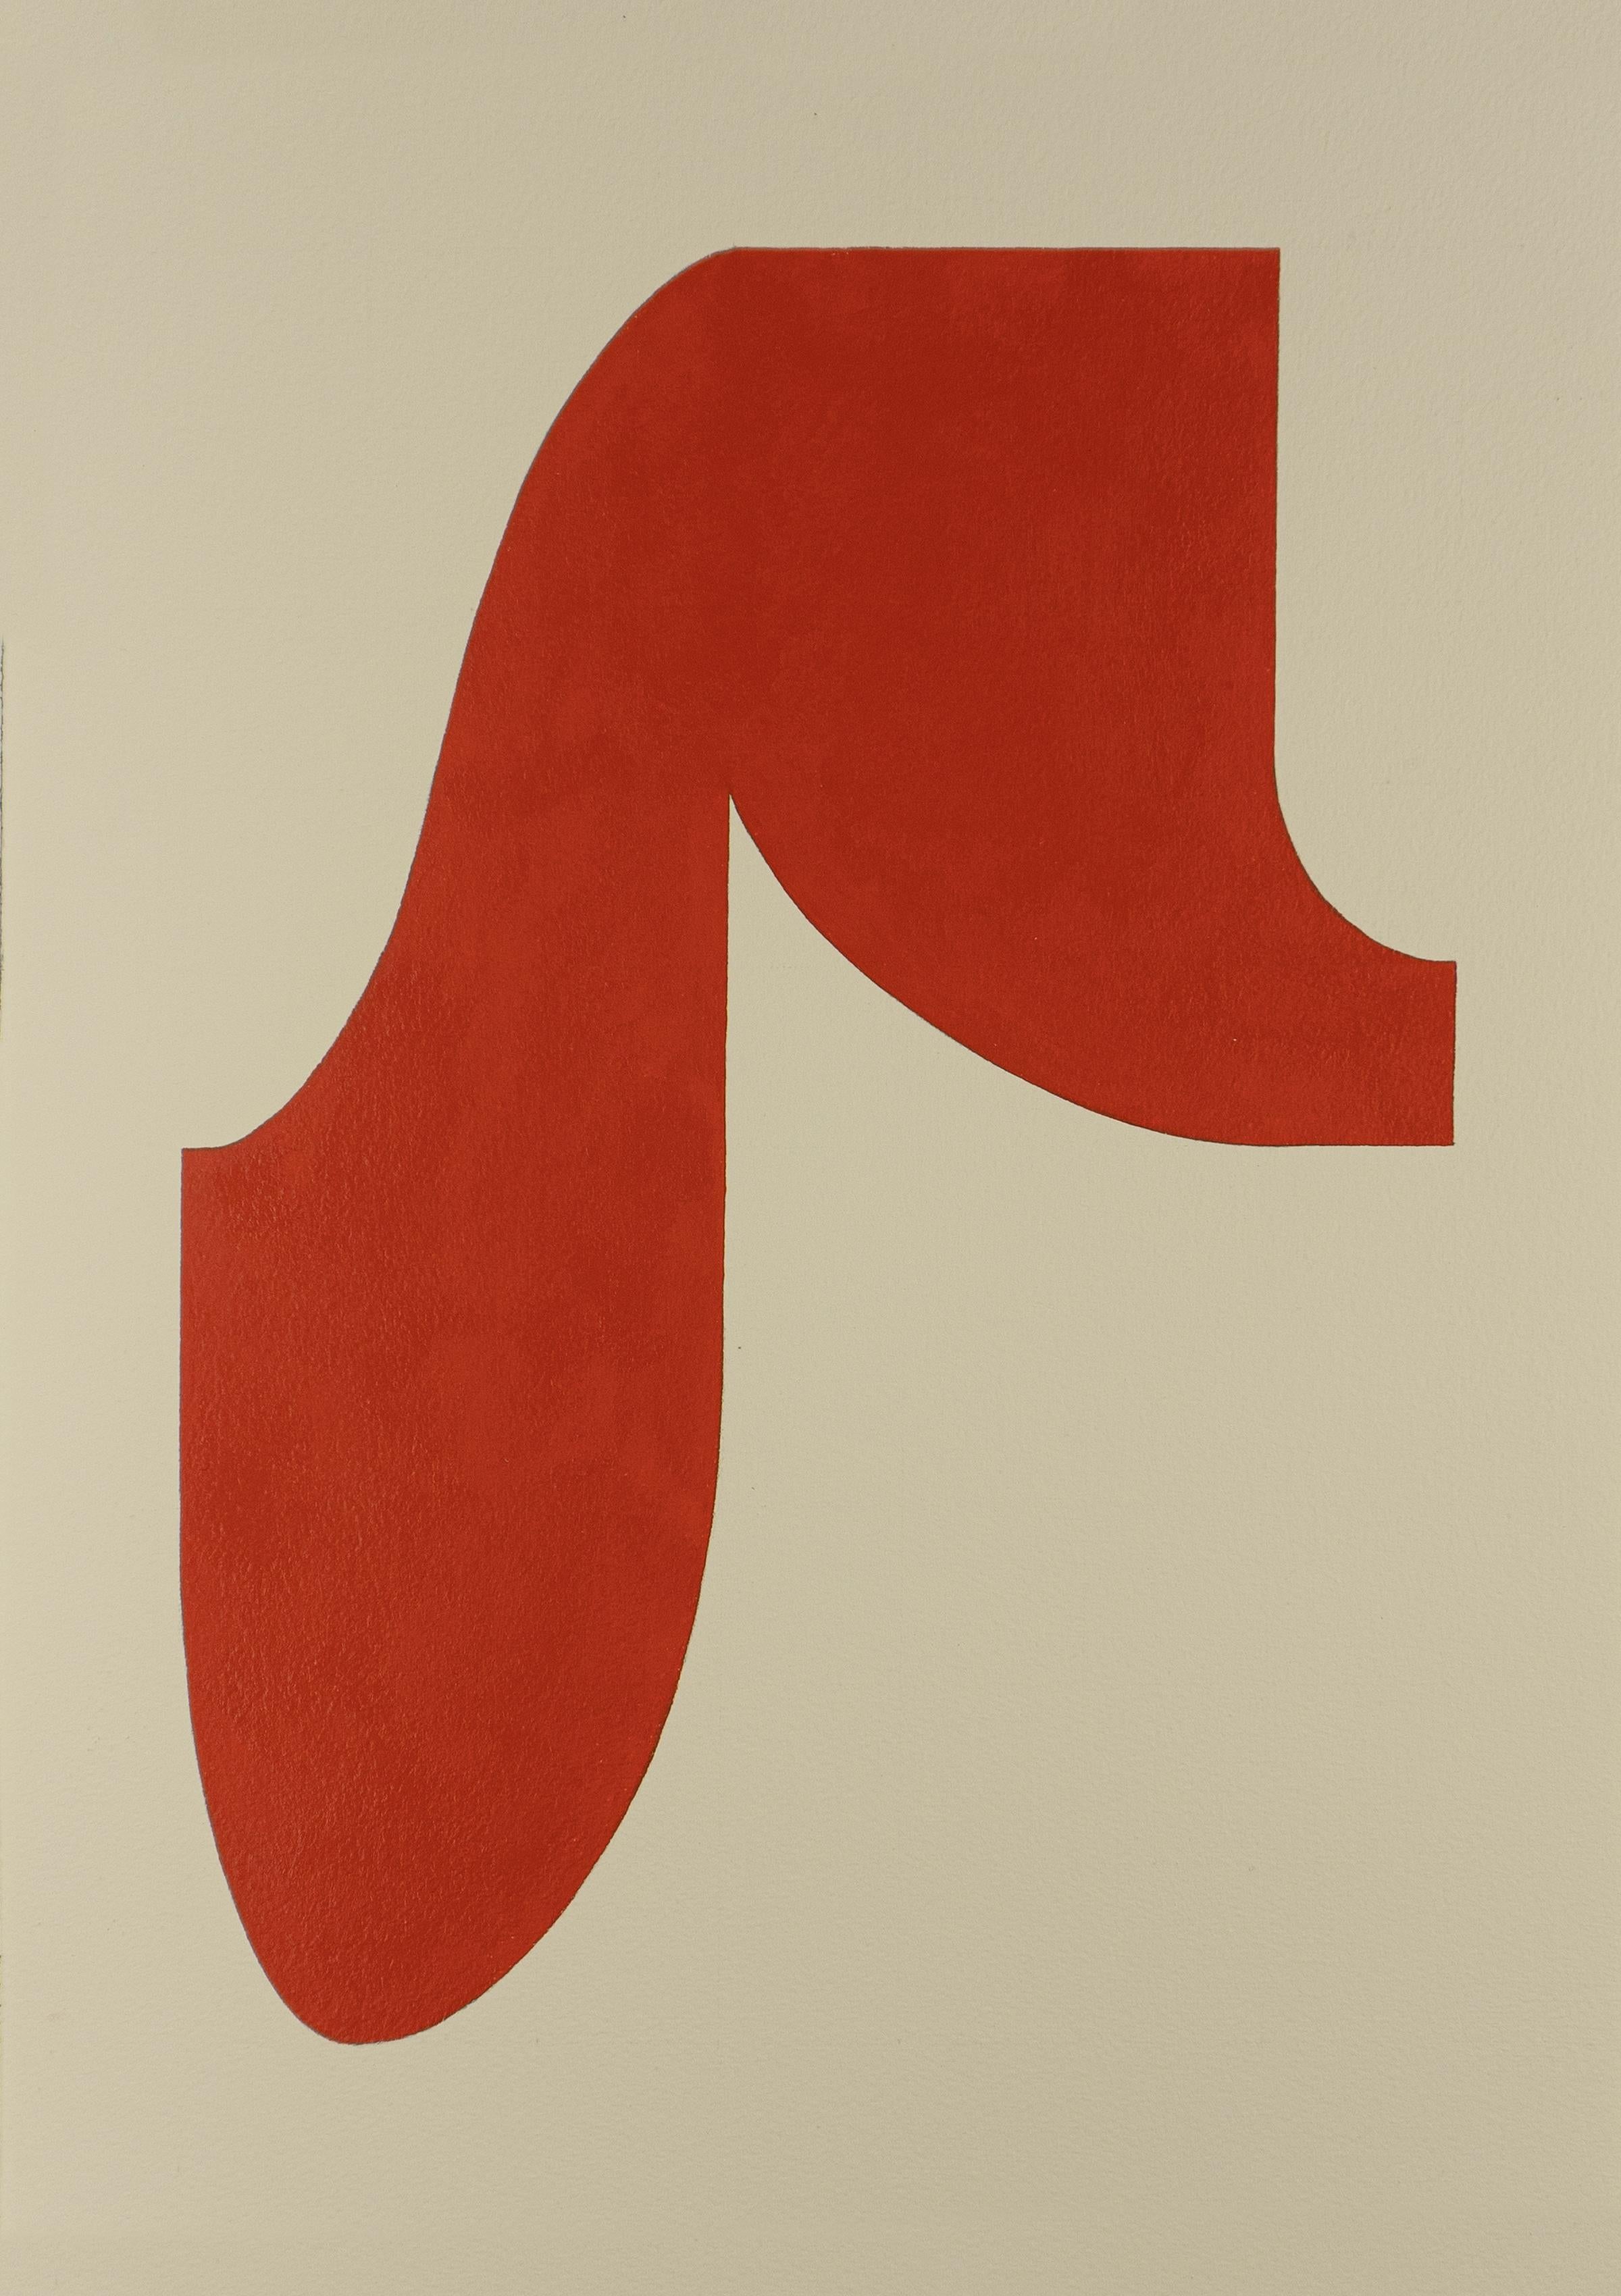 Ryan Park Abstract Painting – Form 22 (2019) - Abstrakte Form, minimalistische, gestische Form, tiefes Rot und Weiß auf Papier